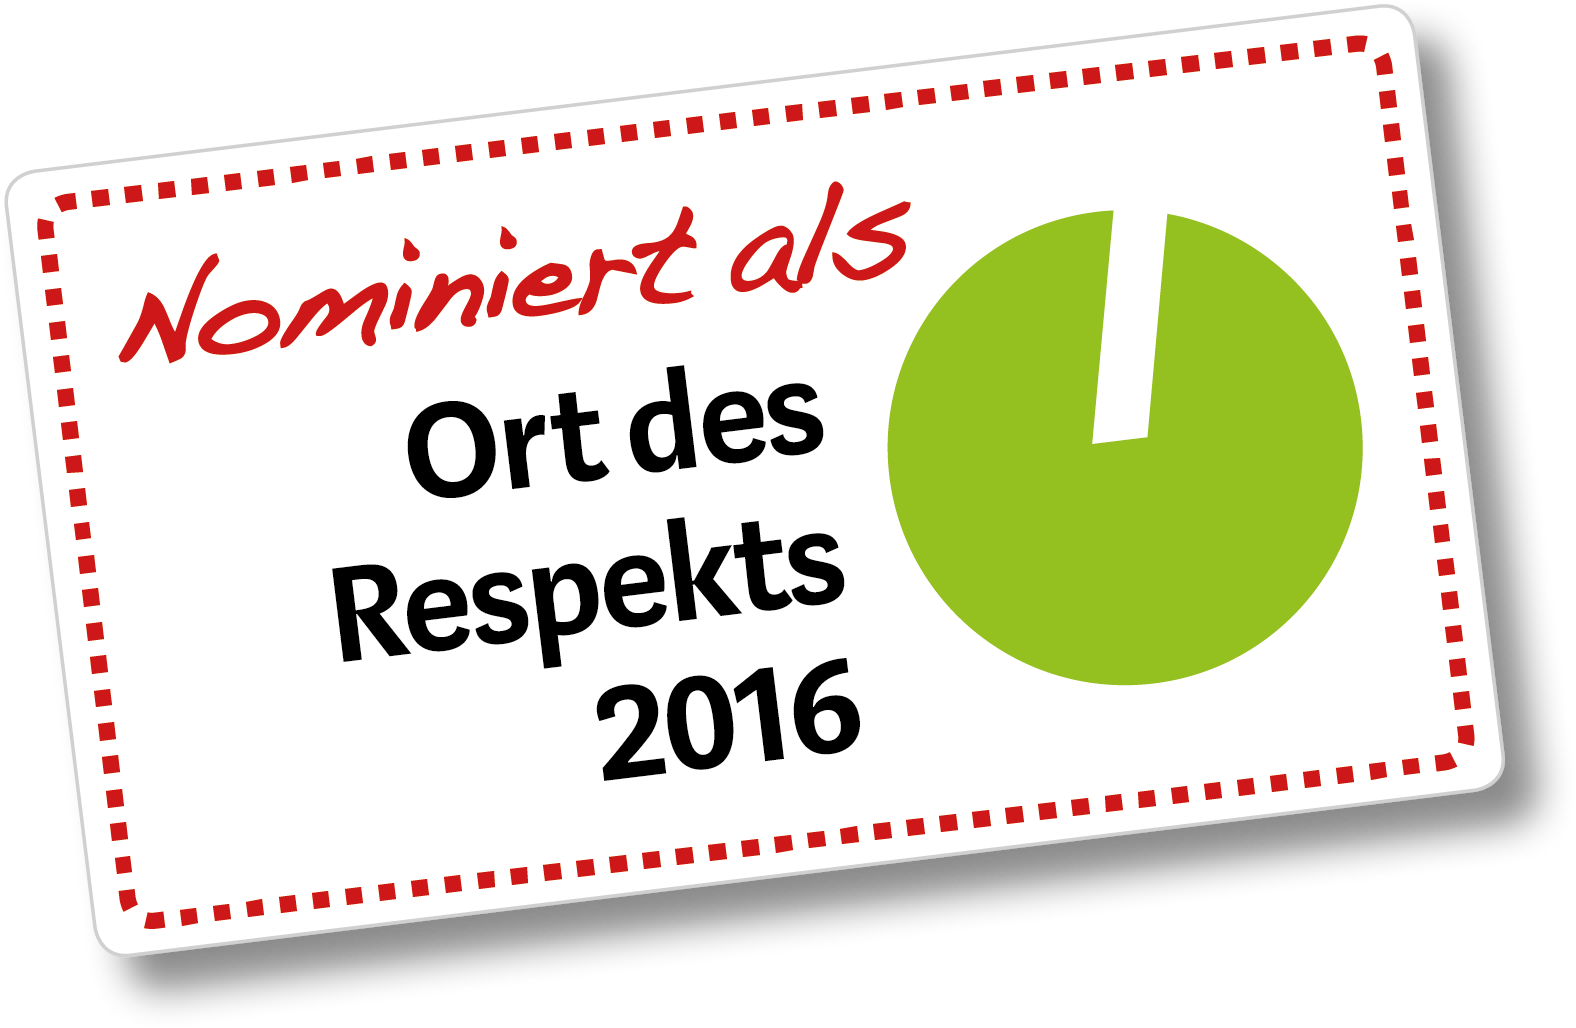 OrtedesRespekts2016_Logo+%281%29